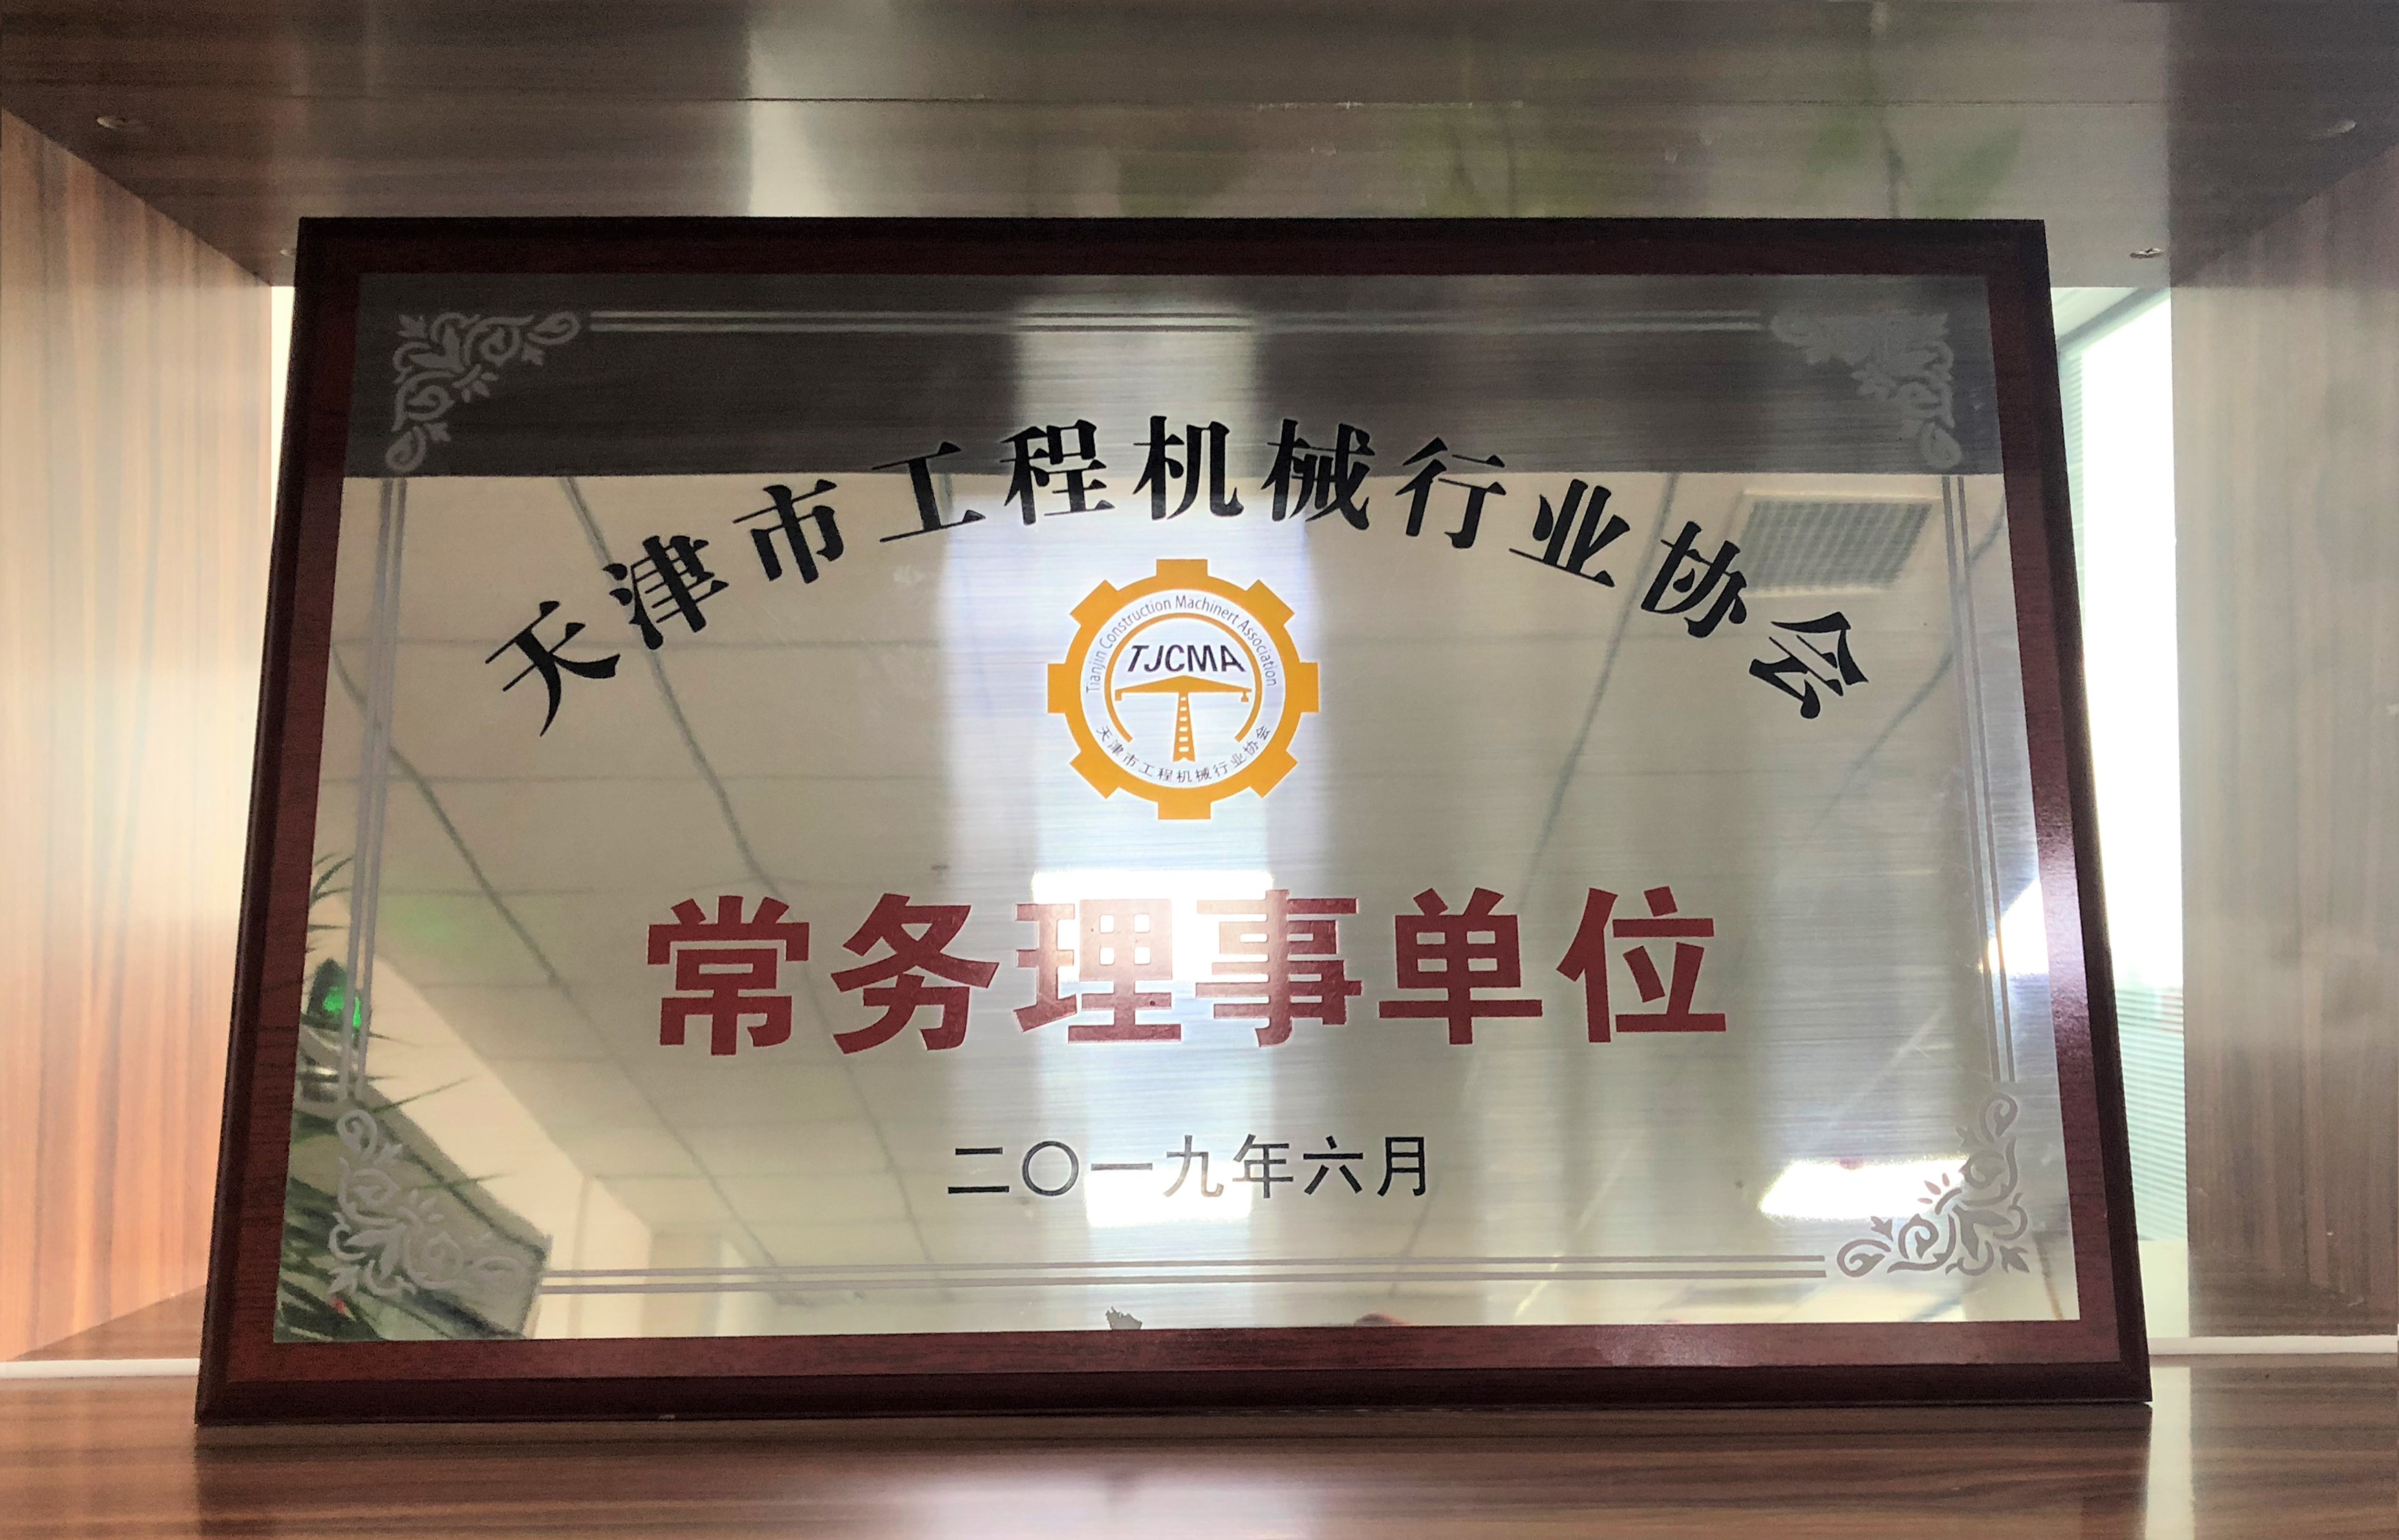 3.资质奖项-天津市工程机械行业协会常务理事单位